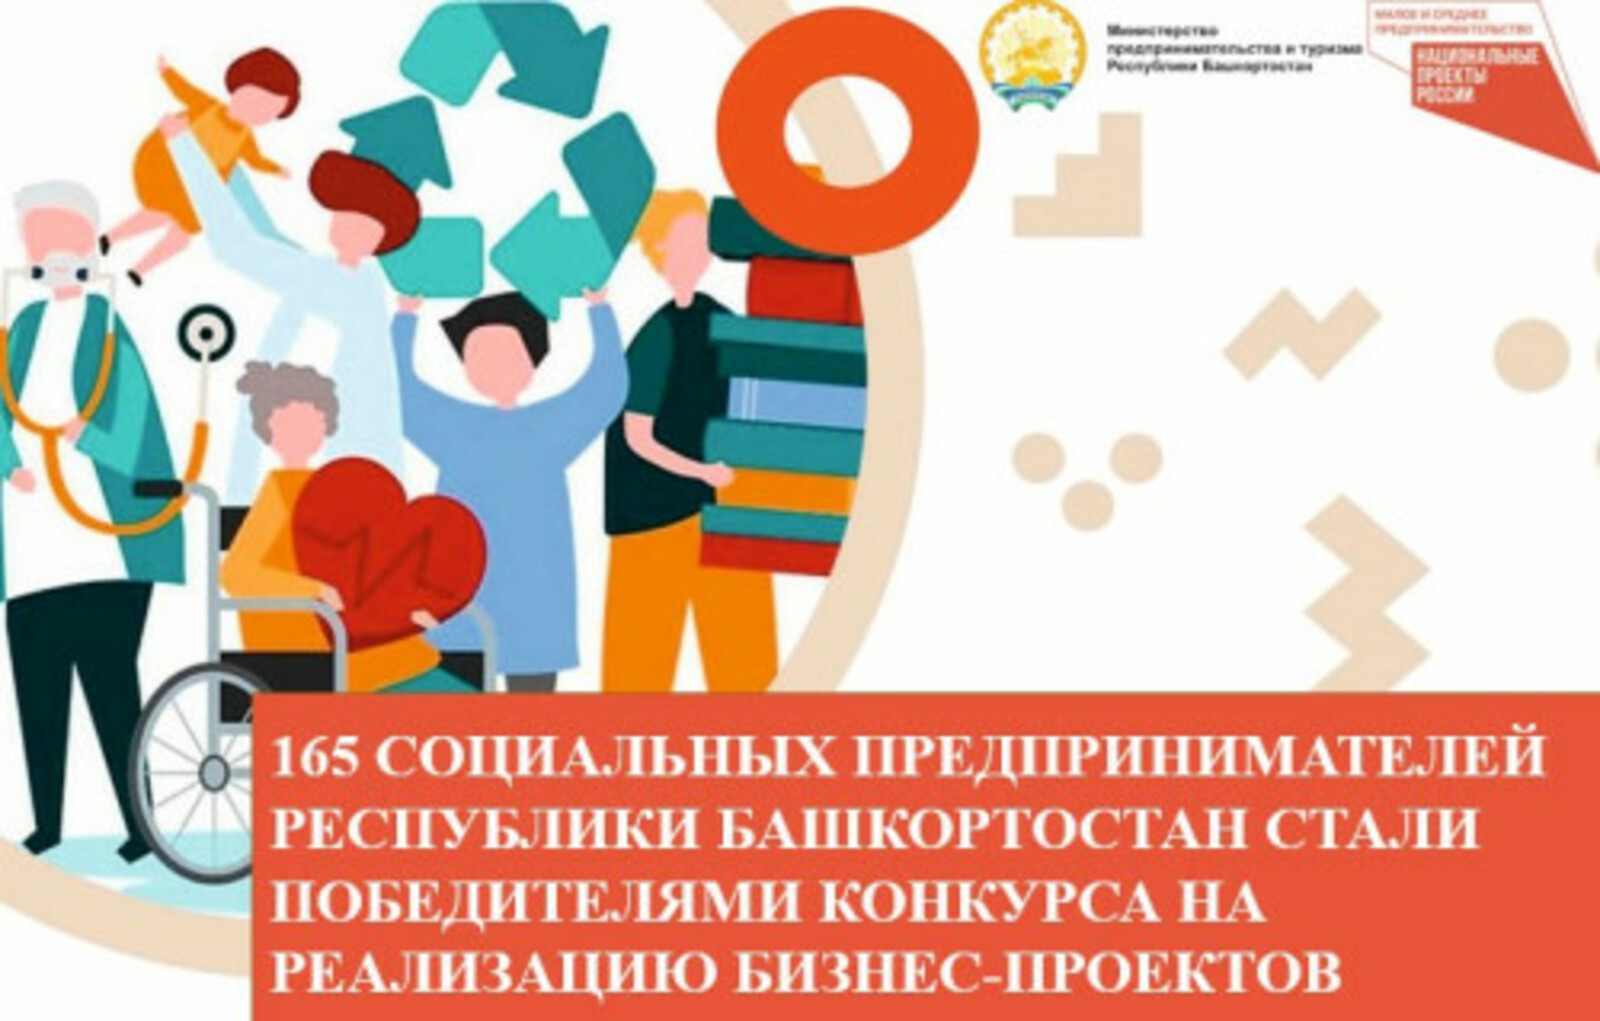 165 социальных предпринимателей Республики Башкортостан стали победителями конкурса на реализацию бизнес-проектов